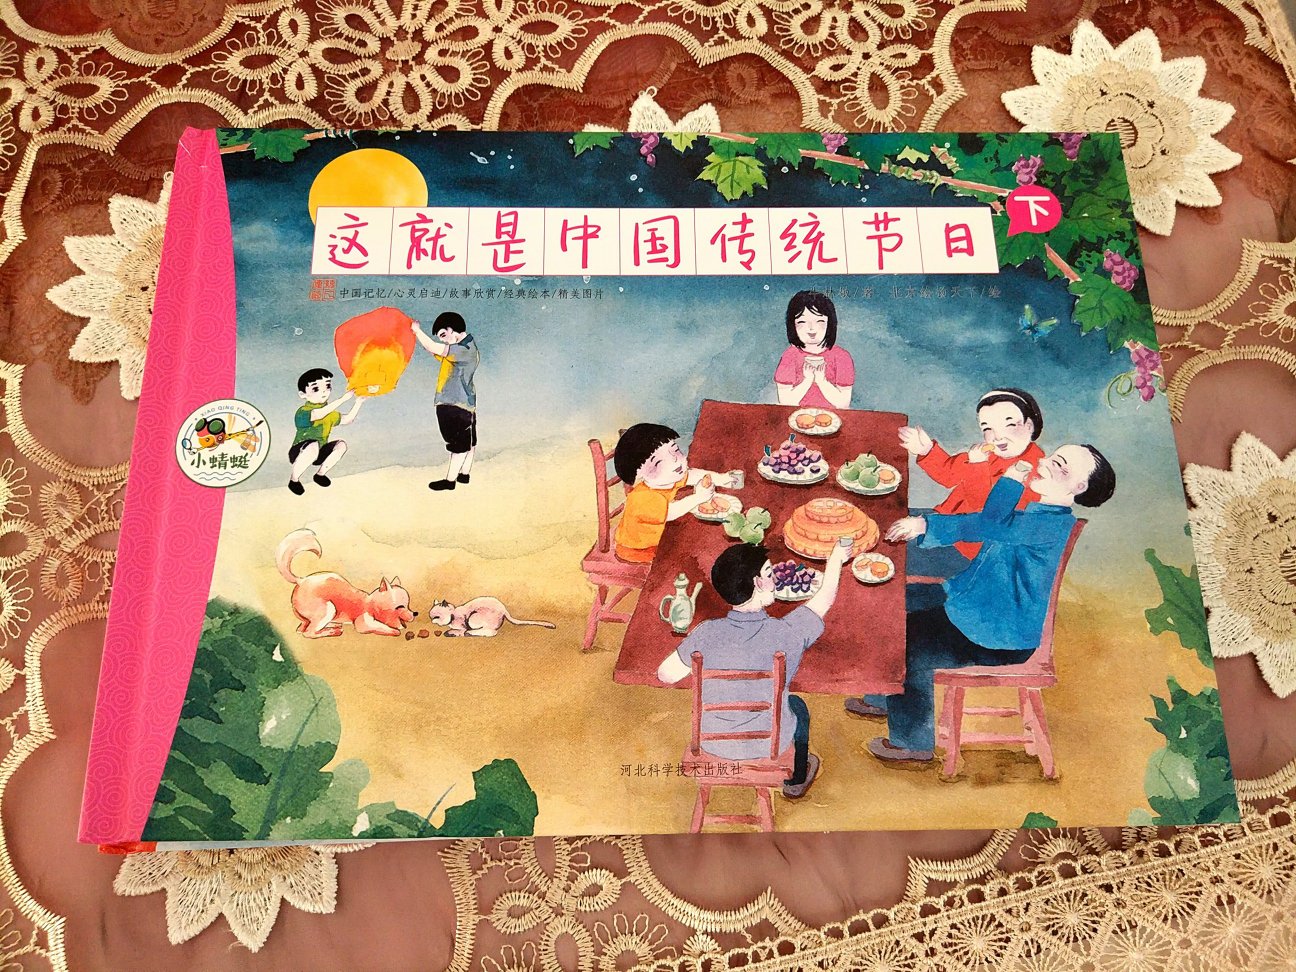 这是一套很好的书。对小朋友来说，介绍了很多传统节日习俗，让孩子知道了更多民俗文化。